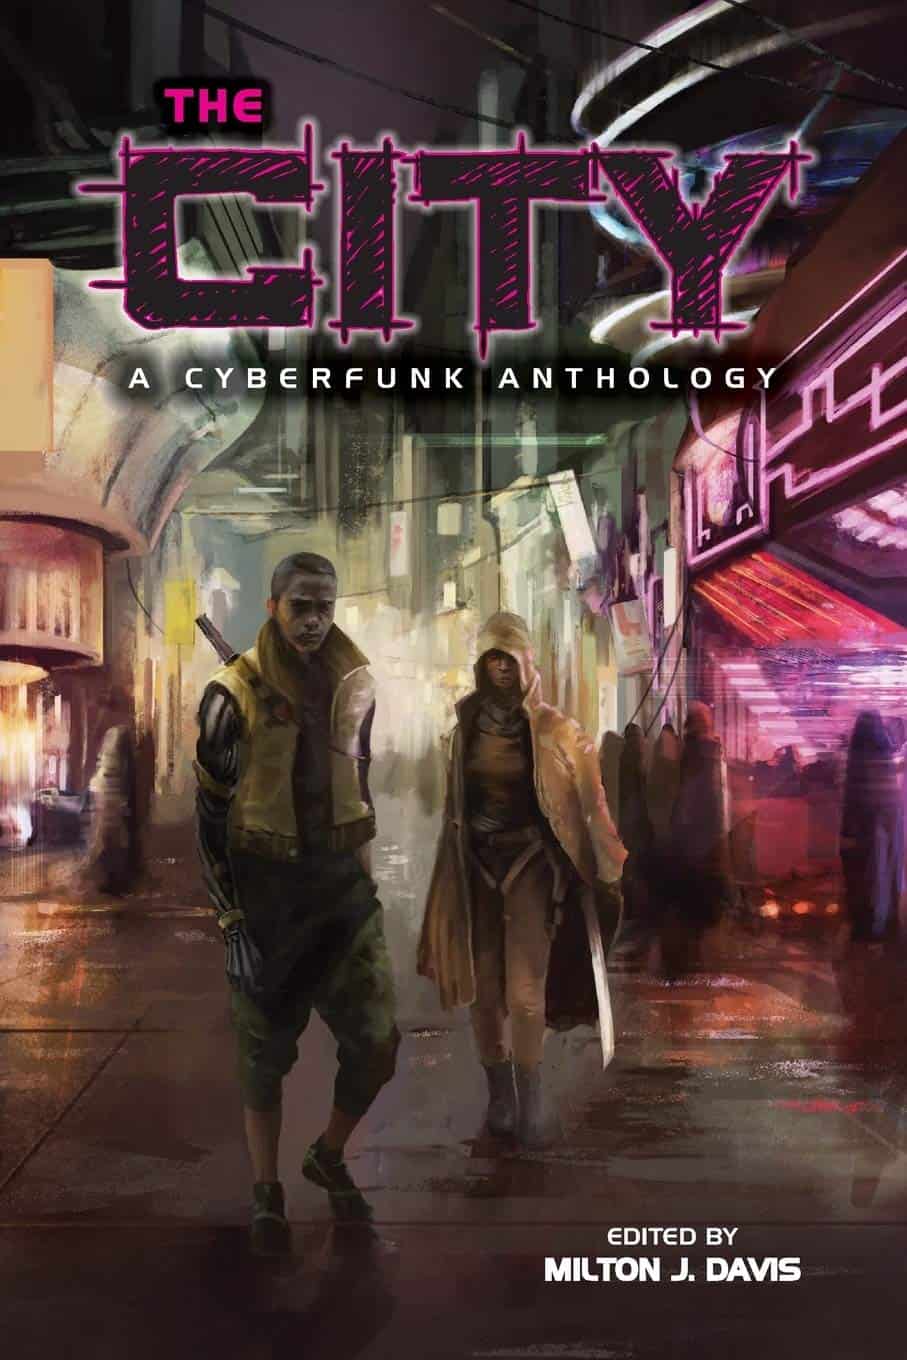 The City: A Cyberfunk Anthology (Edited) by Milton J. Davis (2015)